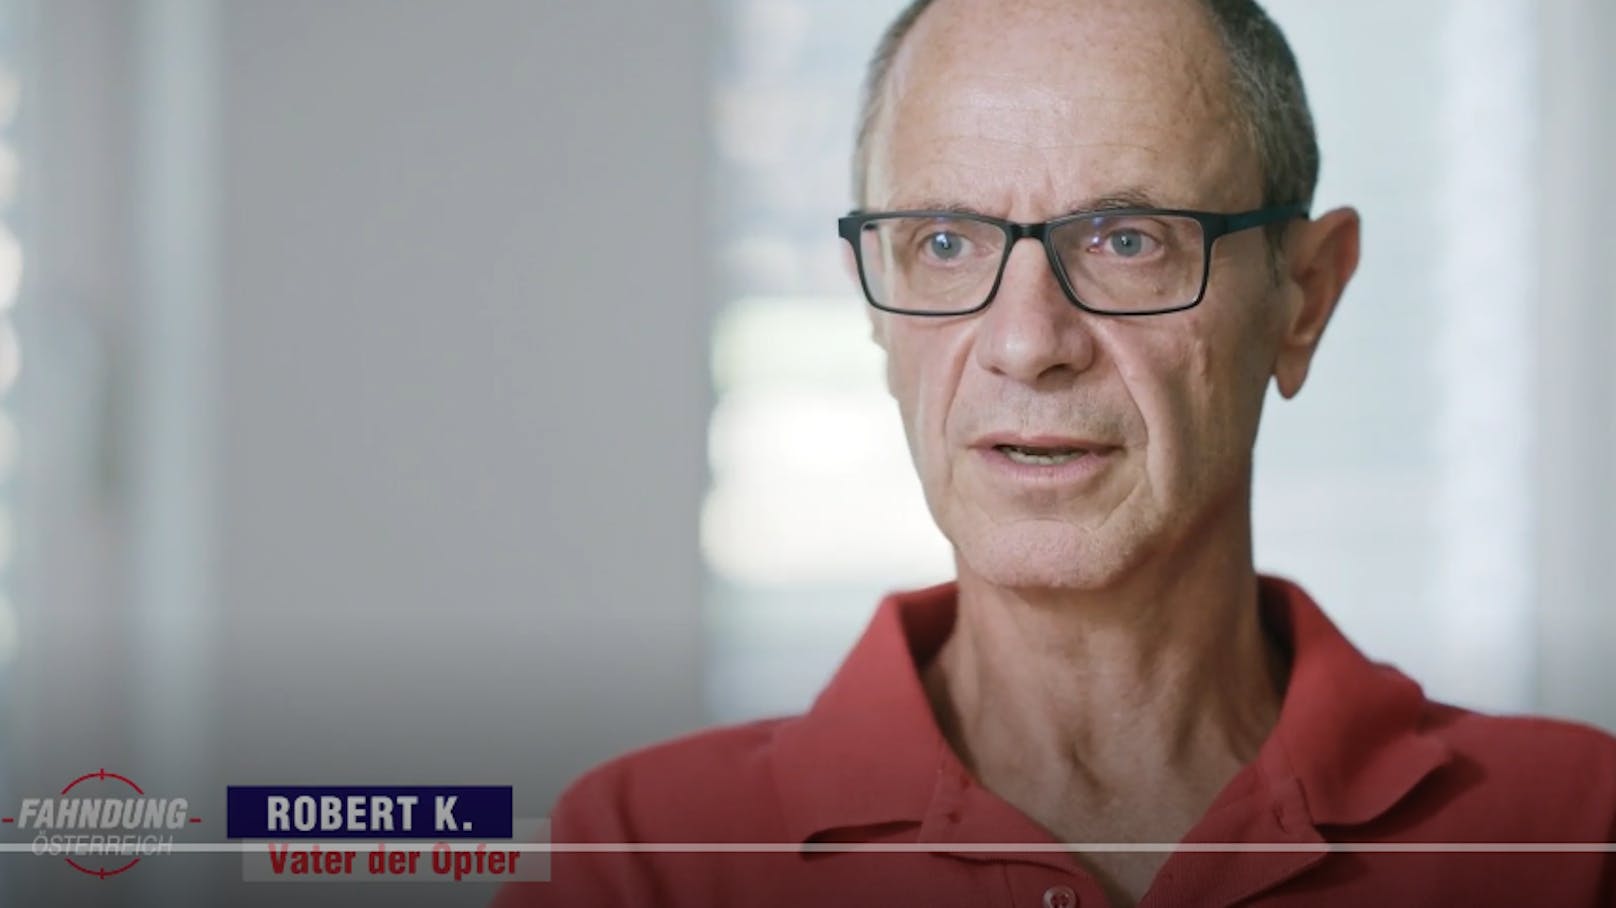 Robert K., Vater der Explosions-Opfer, erzählt in der Sendung "Fahndung Österreich" von dem furchtbaren Unfall.